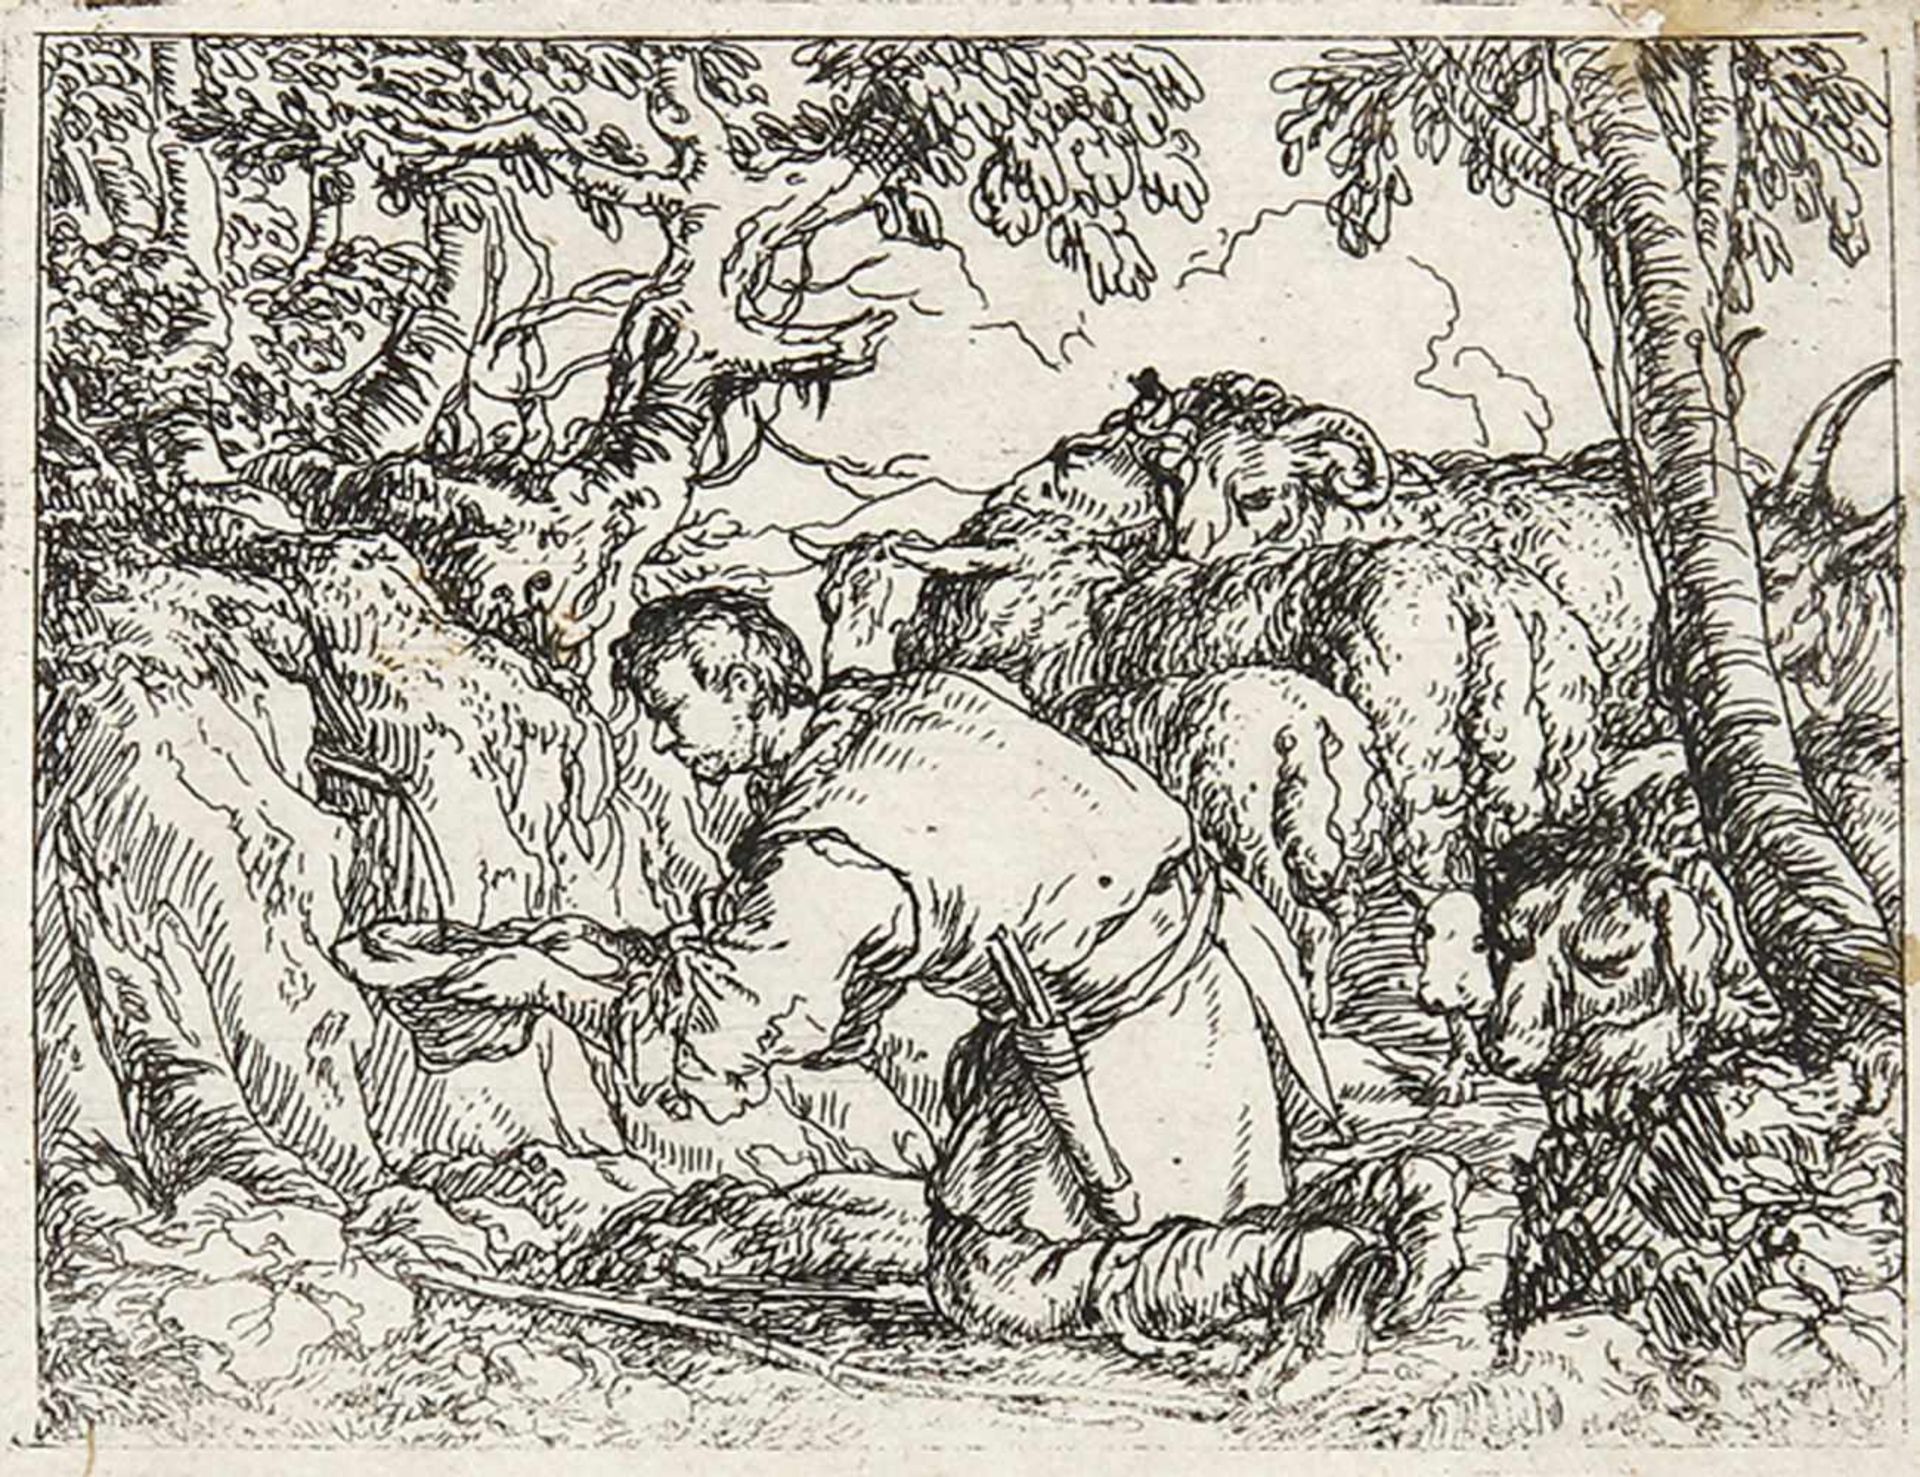 JONAS UMBACH um 1624 - Augsburg - 1693Die zwei sitzenden Jäger mit dem erlegten Wild - Der aus dem